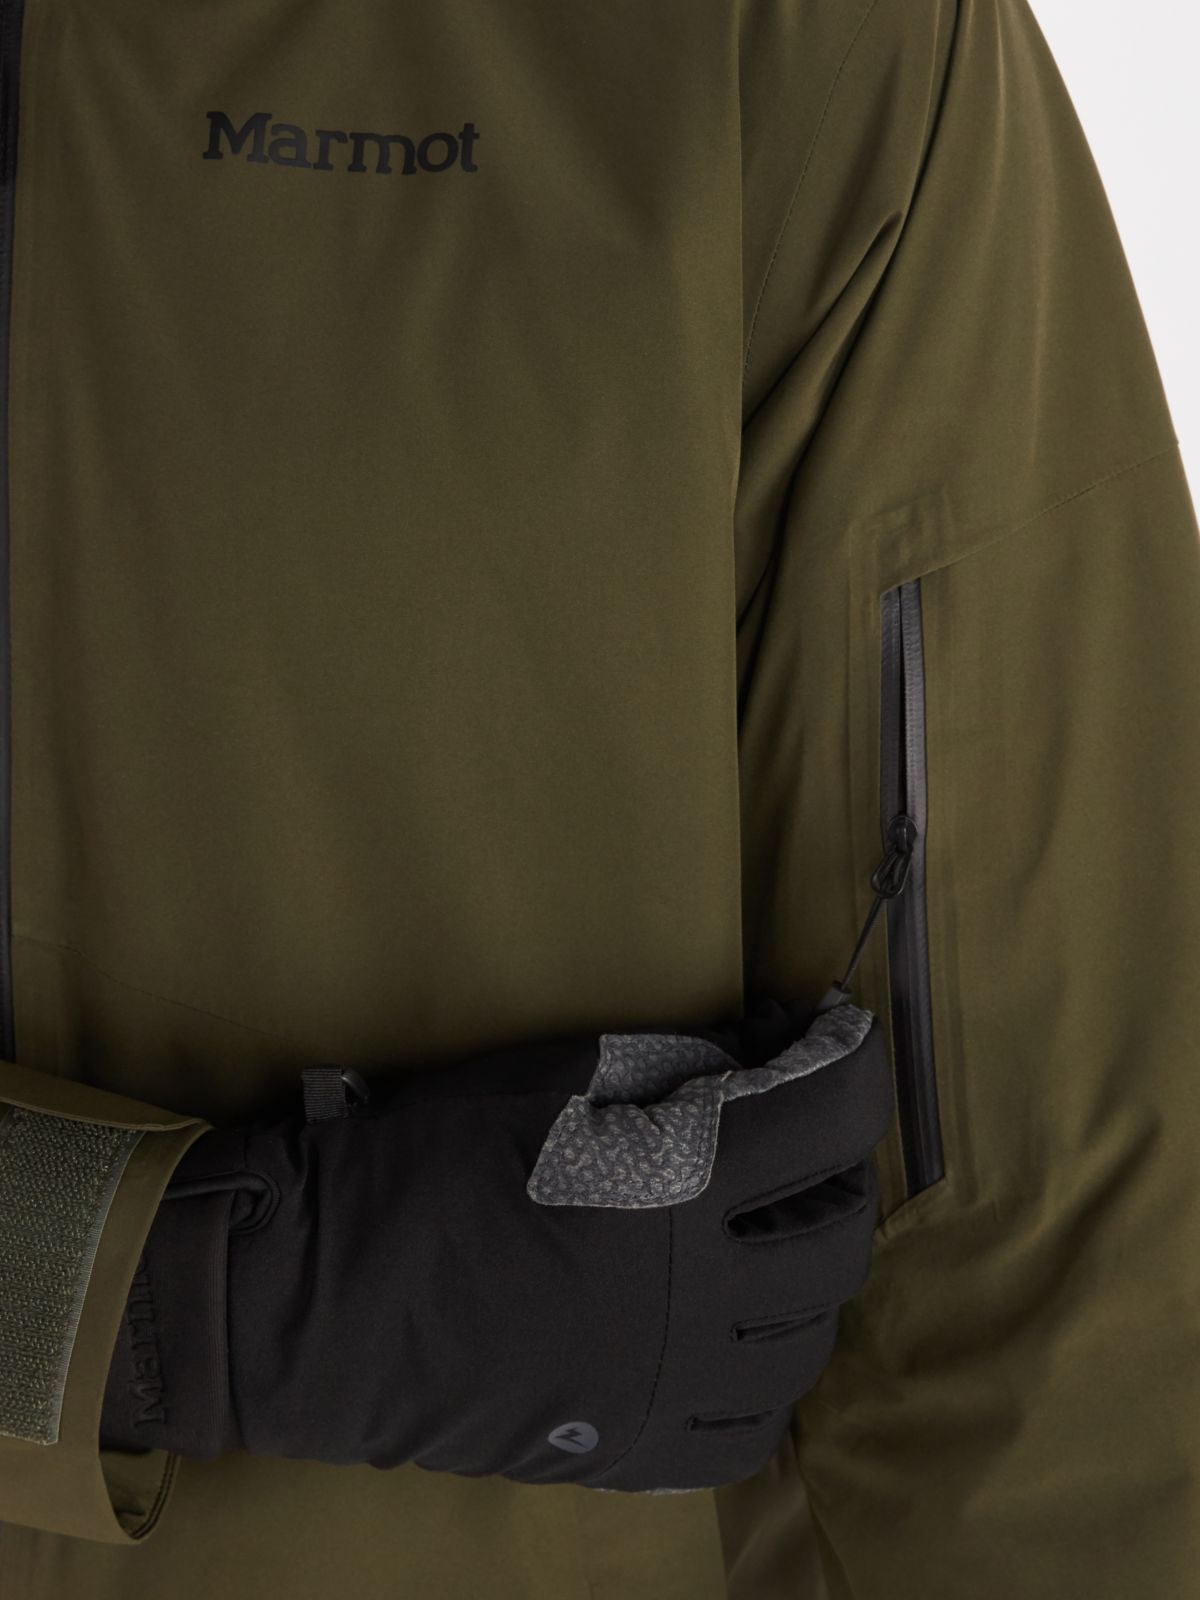 close up of zipper pocket on Marmot mens ski jacket in dark green